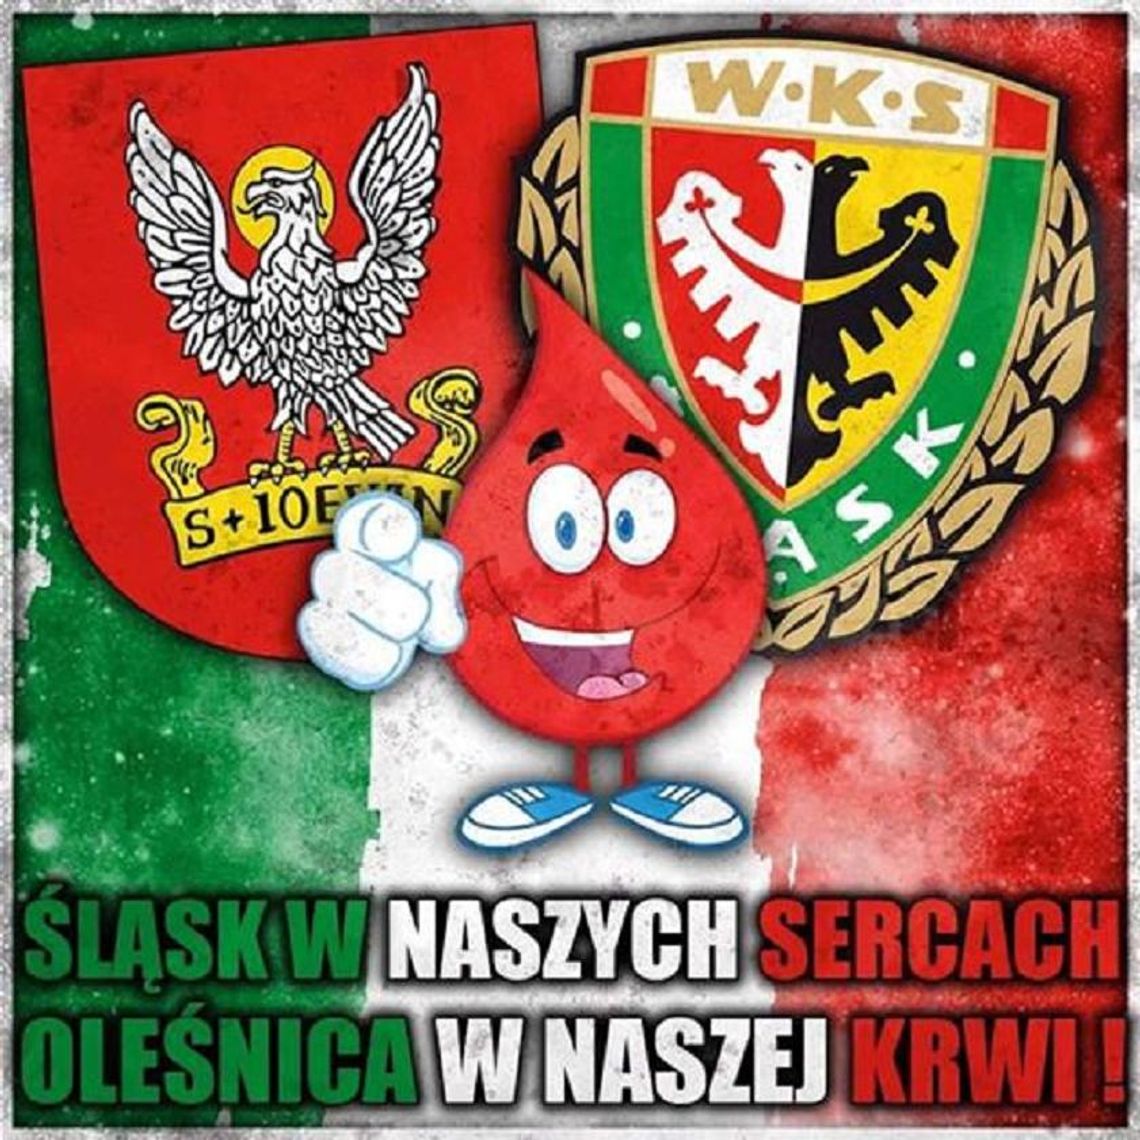 Śląsk Wrocław w naszych sercach - Oleśnica w naszej krwi